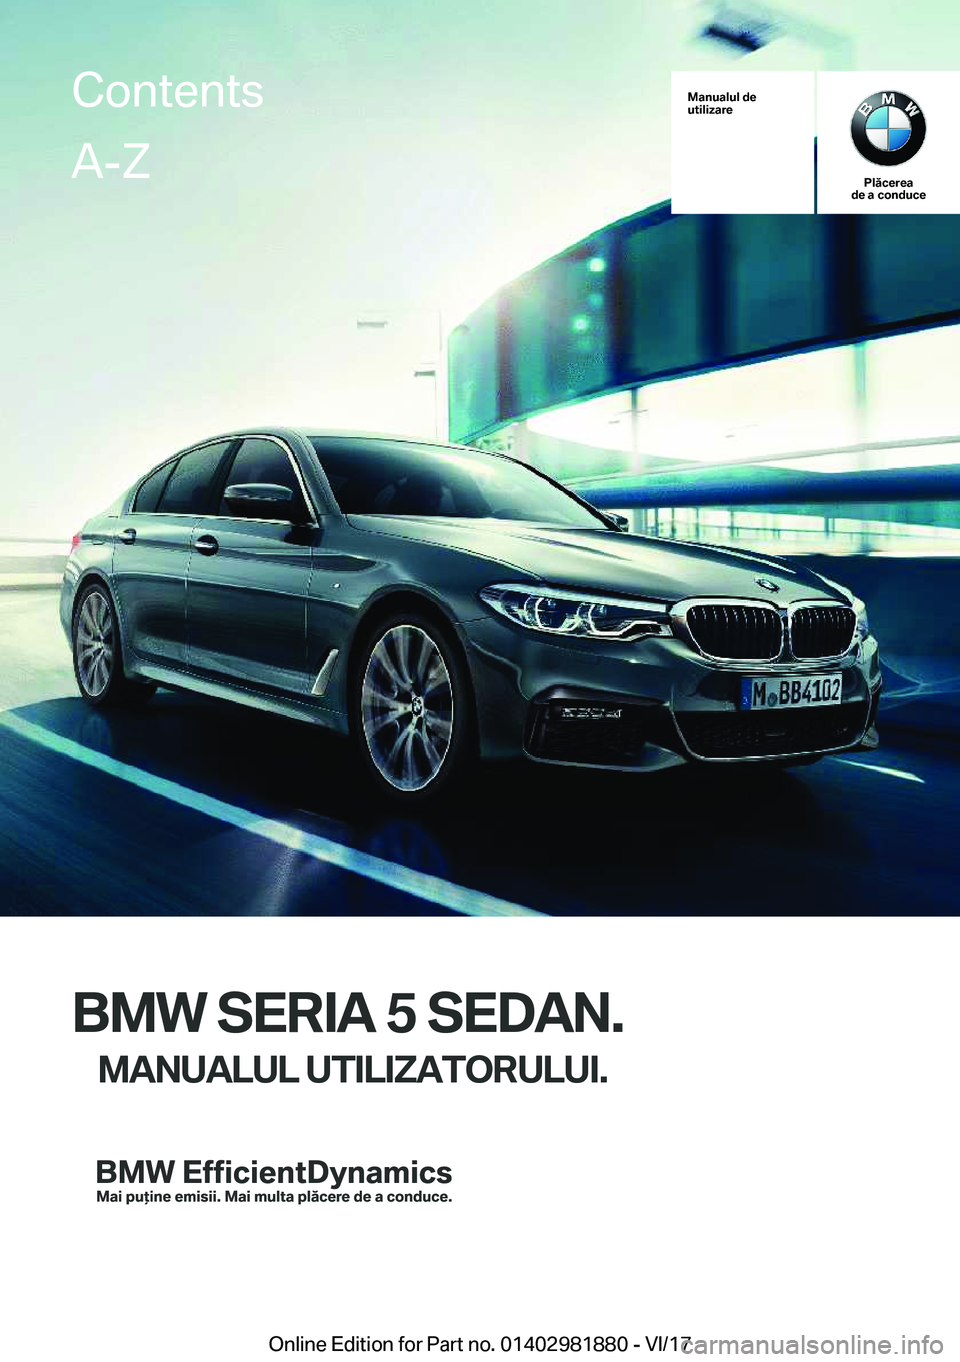 BMW 5 SERIES 2018  Ghiduri De Utilizare (in Romanian) �M�a�n�u�a�l�u�l��d�e
�u�t�i�l�i�z�a�r�e
�P�l�ă�c�e�r�e�a
�d�e��a��c�o�n�d�u�c�e
�B�M�W��S�E�R�I�A��5��S�E�D�A�N�.
�M�A�N�U�A�L�U�L��U�T�I�L�I�Z�A�T�O�R�U�L�U�I�.
�C�o�n�t�e�n�t�s�A�-�Z
�O�n�l